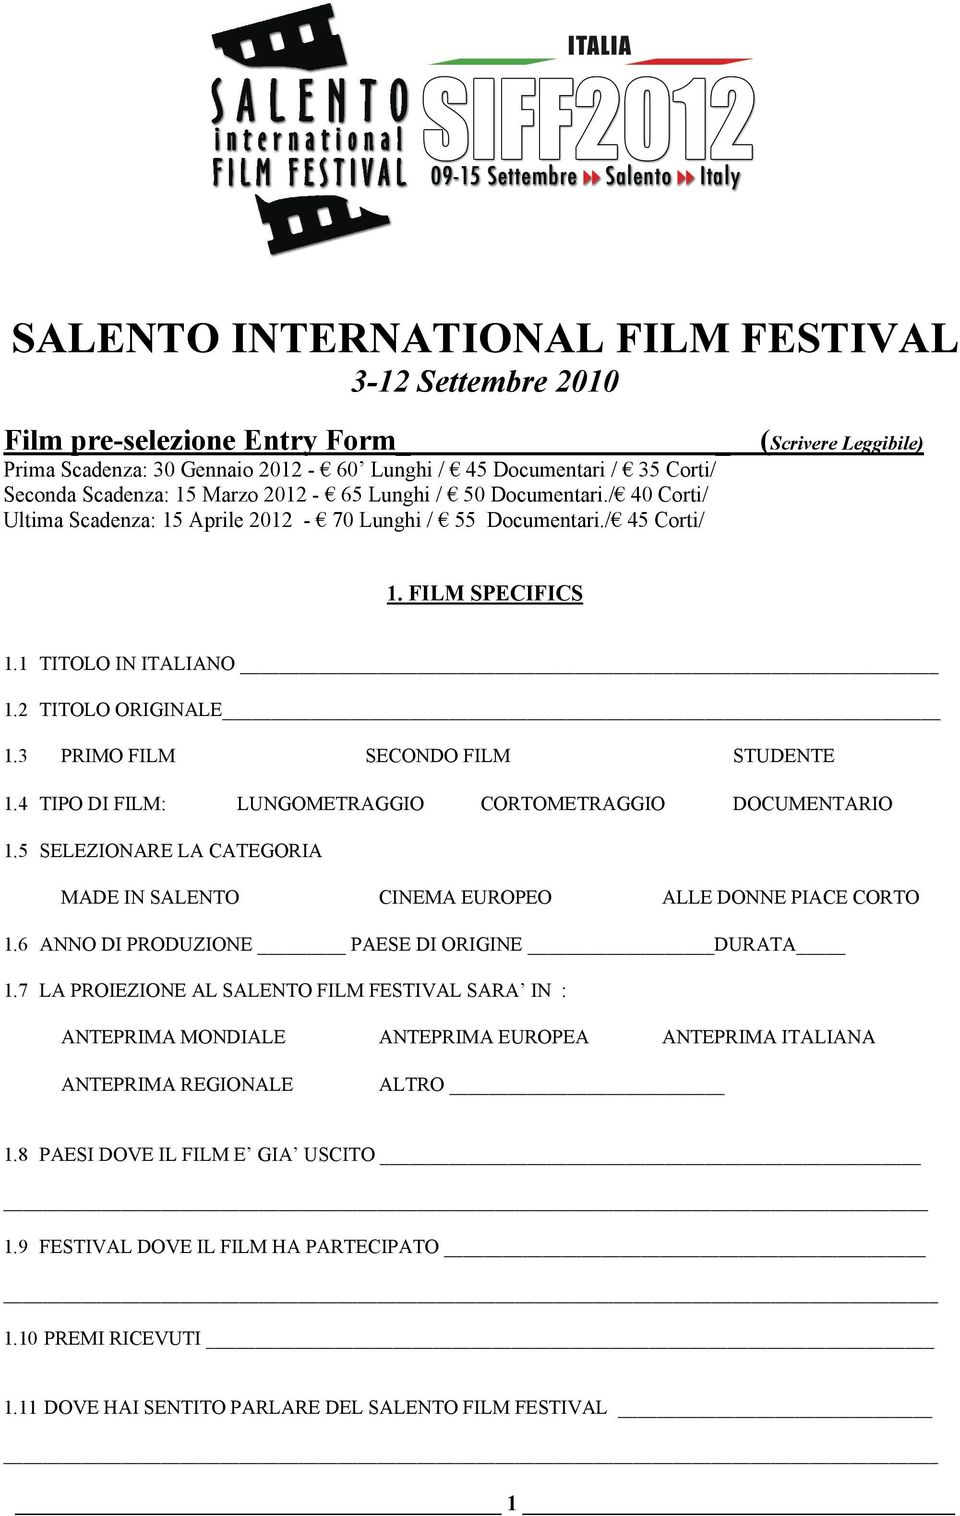 3 PRIMO FILM SECONDO FILM STUDENTE 1.4 TIPO DI FILM: LUNGOMETRAGGIO CORTOMETRAGGIO DOCUMENTARIO 1.5 SELEZIONARE LA CATEGORIA MADE IN SALENTO CINEMA EUROPEO ALLE DONNE PIACE CORTO 1.